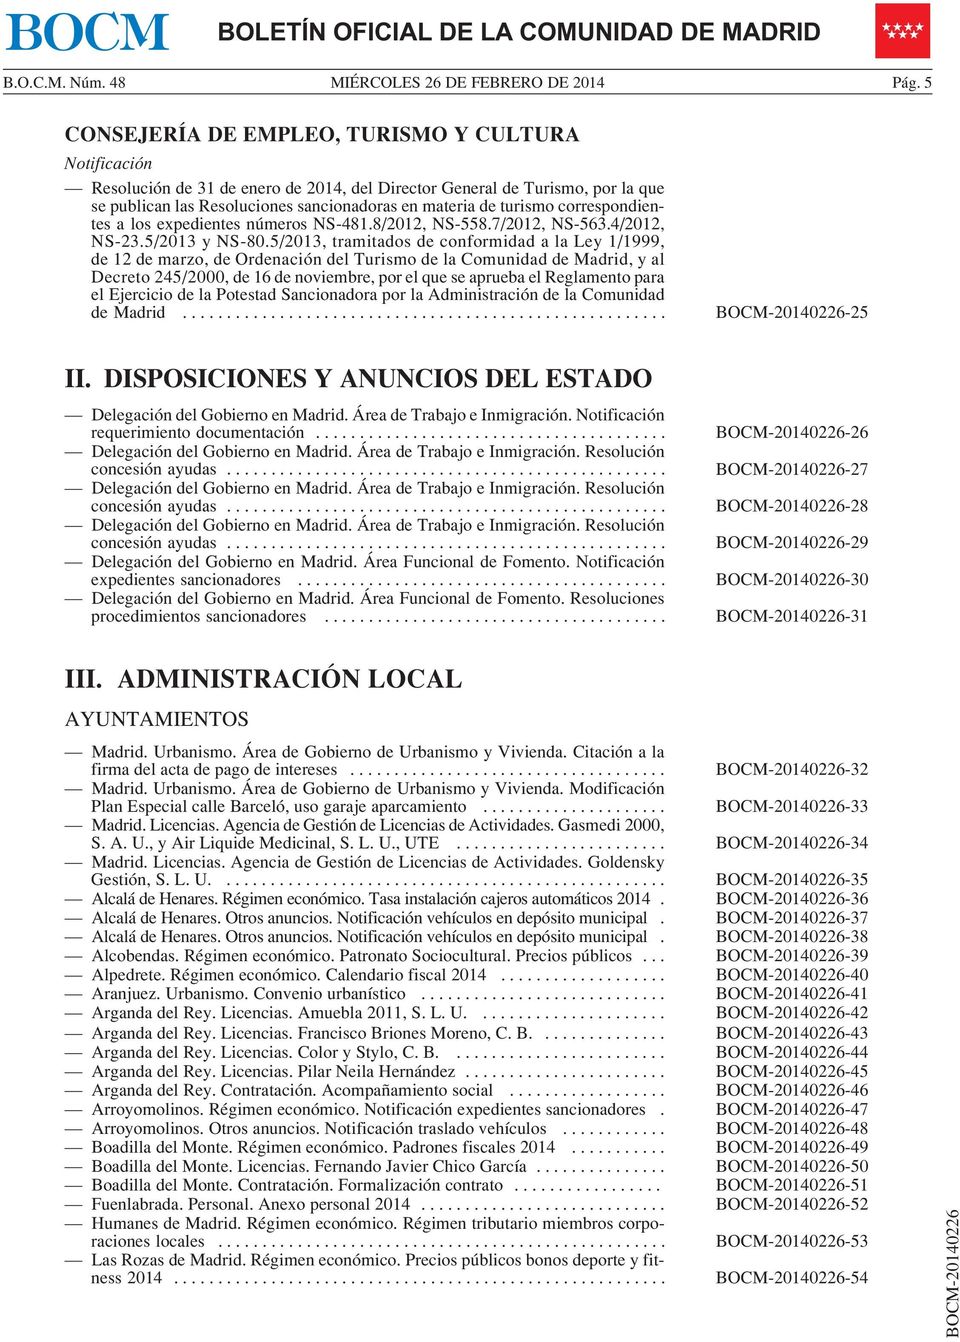 5/2013, tramitados de conformidad a la Ley 1/1999, de 12 de marzo, de Ordenación del Turismo de la Comunidad de Madrid, y al Decreto 245/2000, de 16 de noviembre, por el que se aprueba el Reglamento